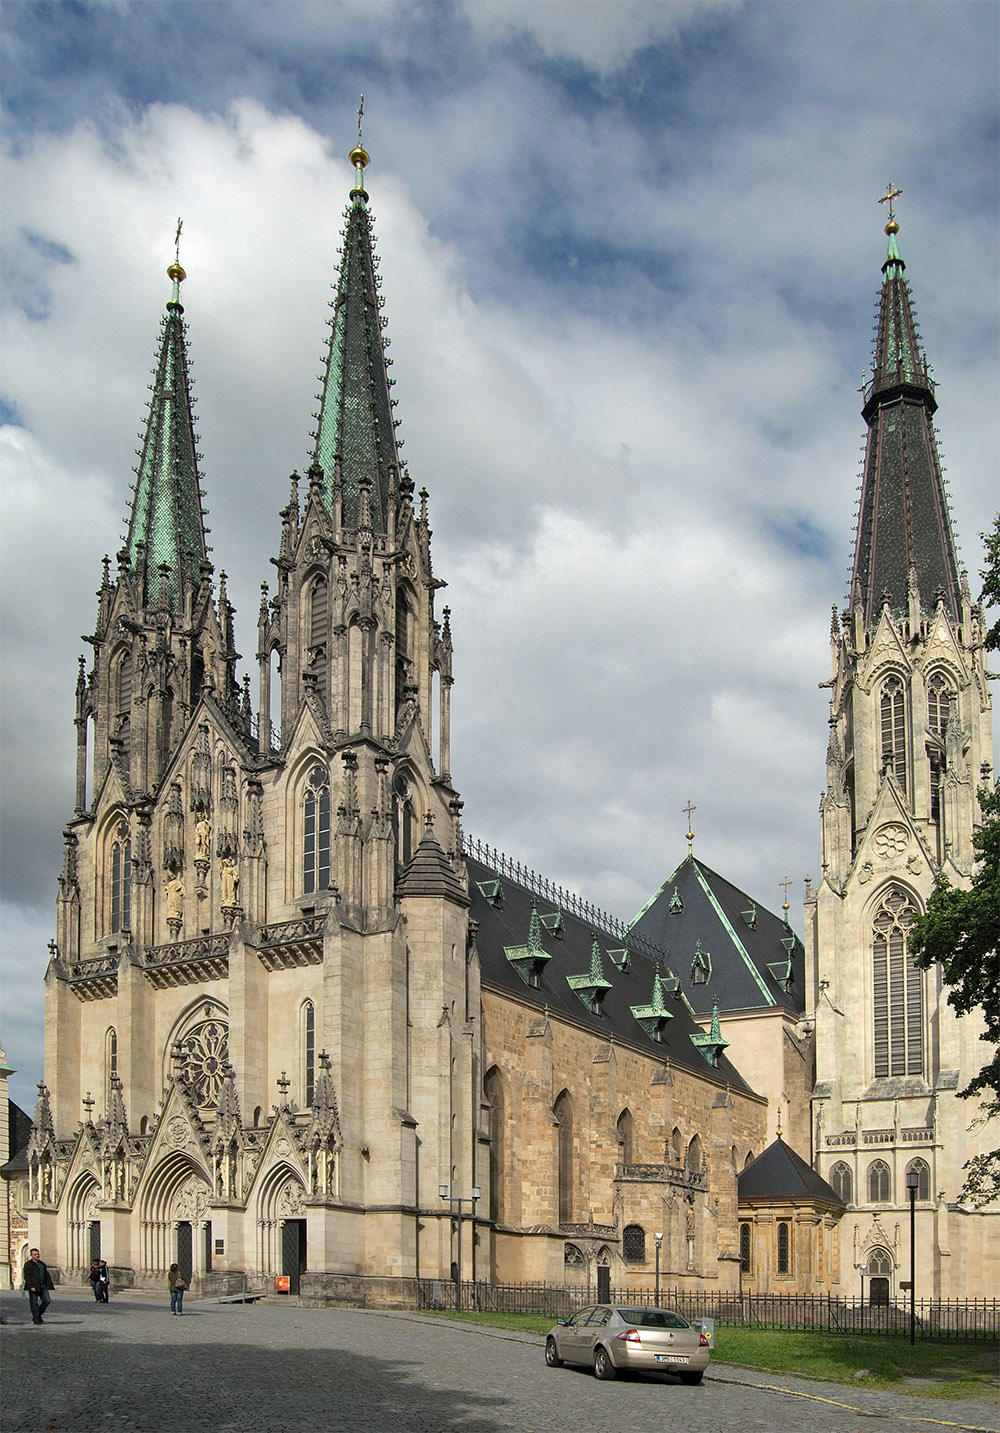 Olomoucká katedrála sv. Václava. Zdroj: Wikipedie.org, autor: Kirk, fotografie upravena